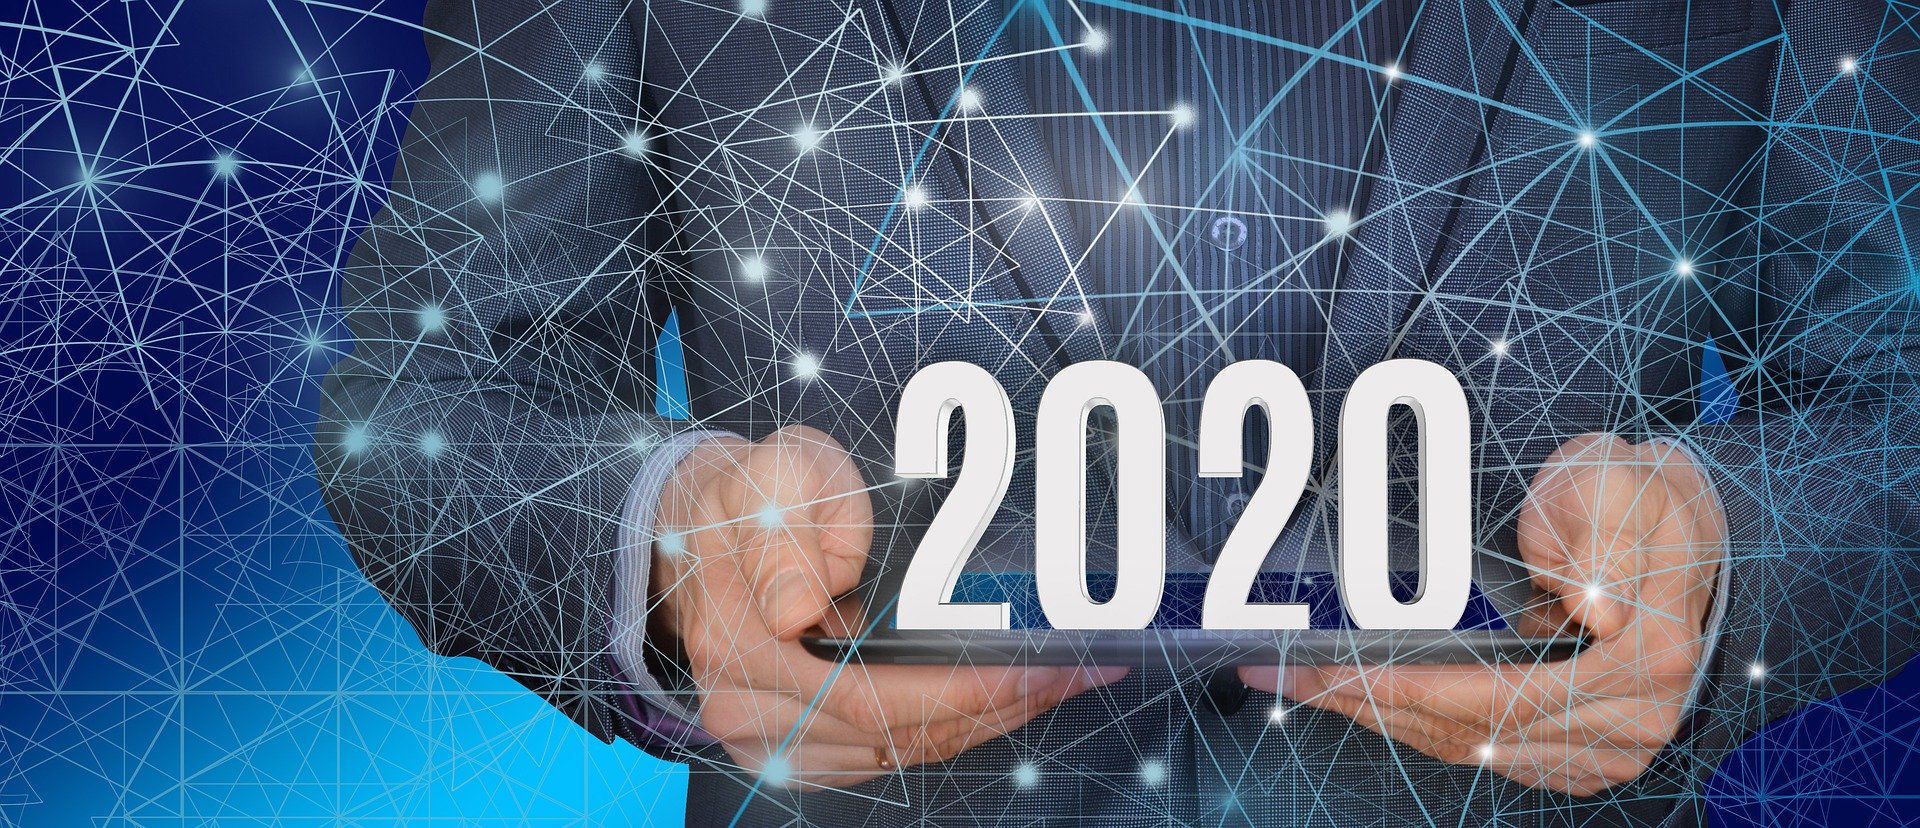 Bitdefender 2020 Cybersecurity Predictions